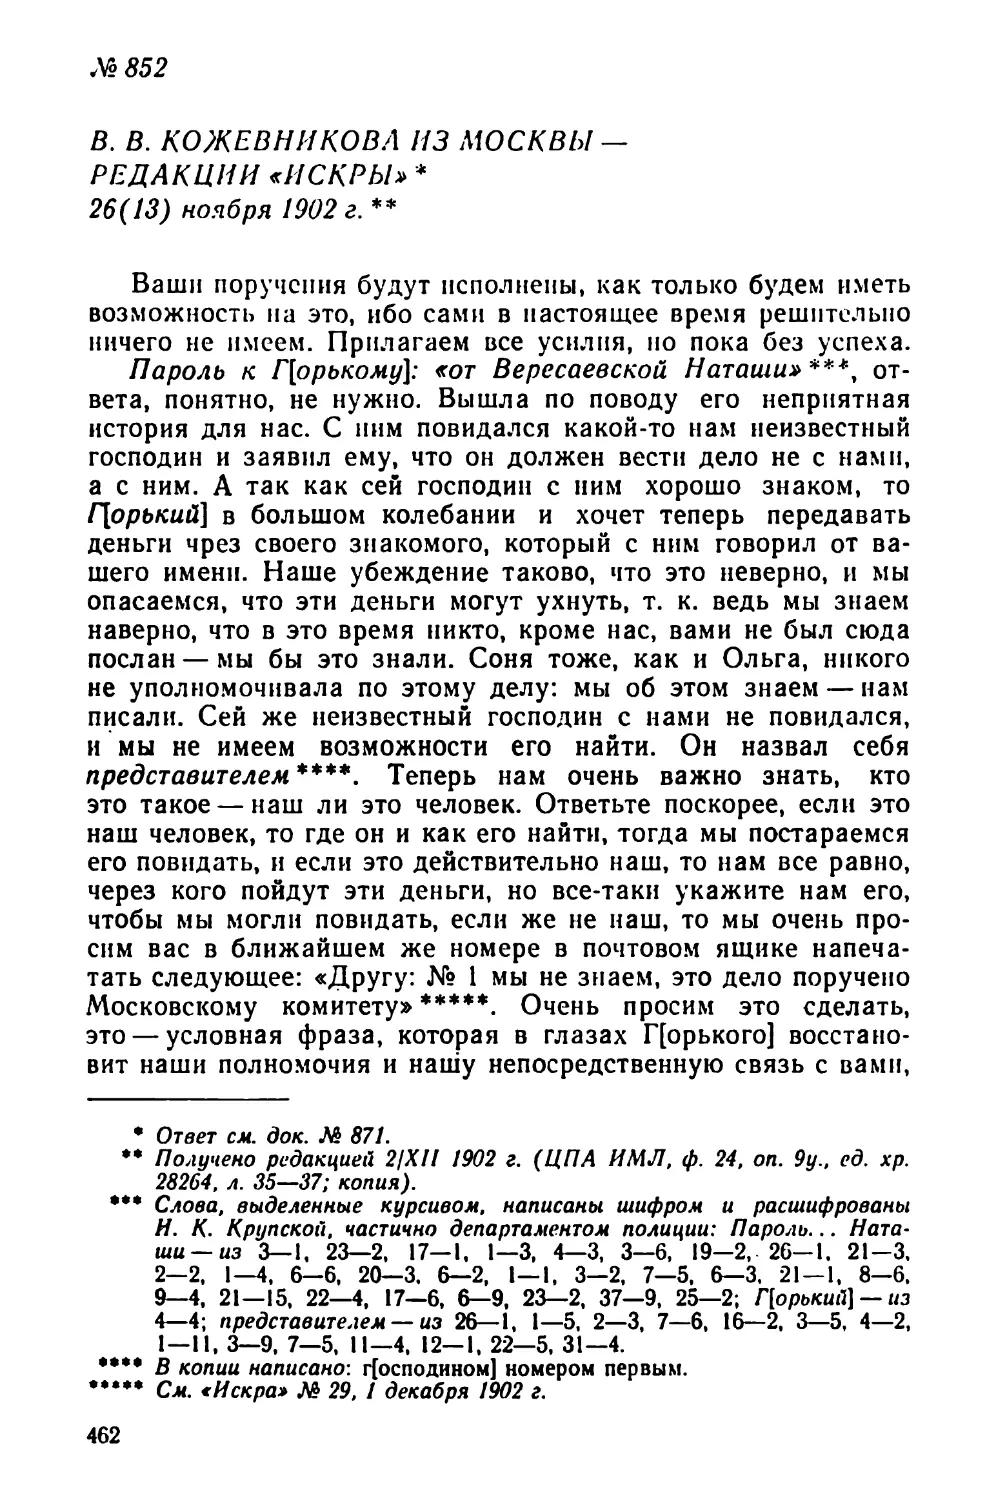 № 852 В. В. Кожевникова из Москвы — редакции «Искры». 26 ноября